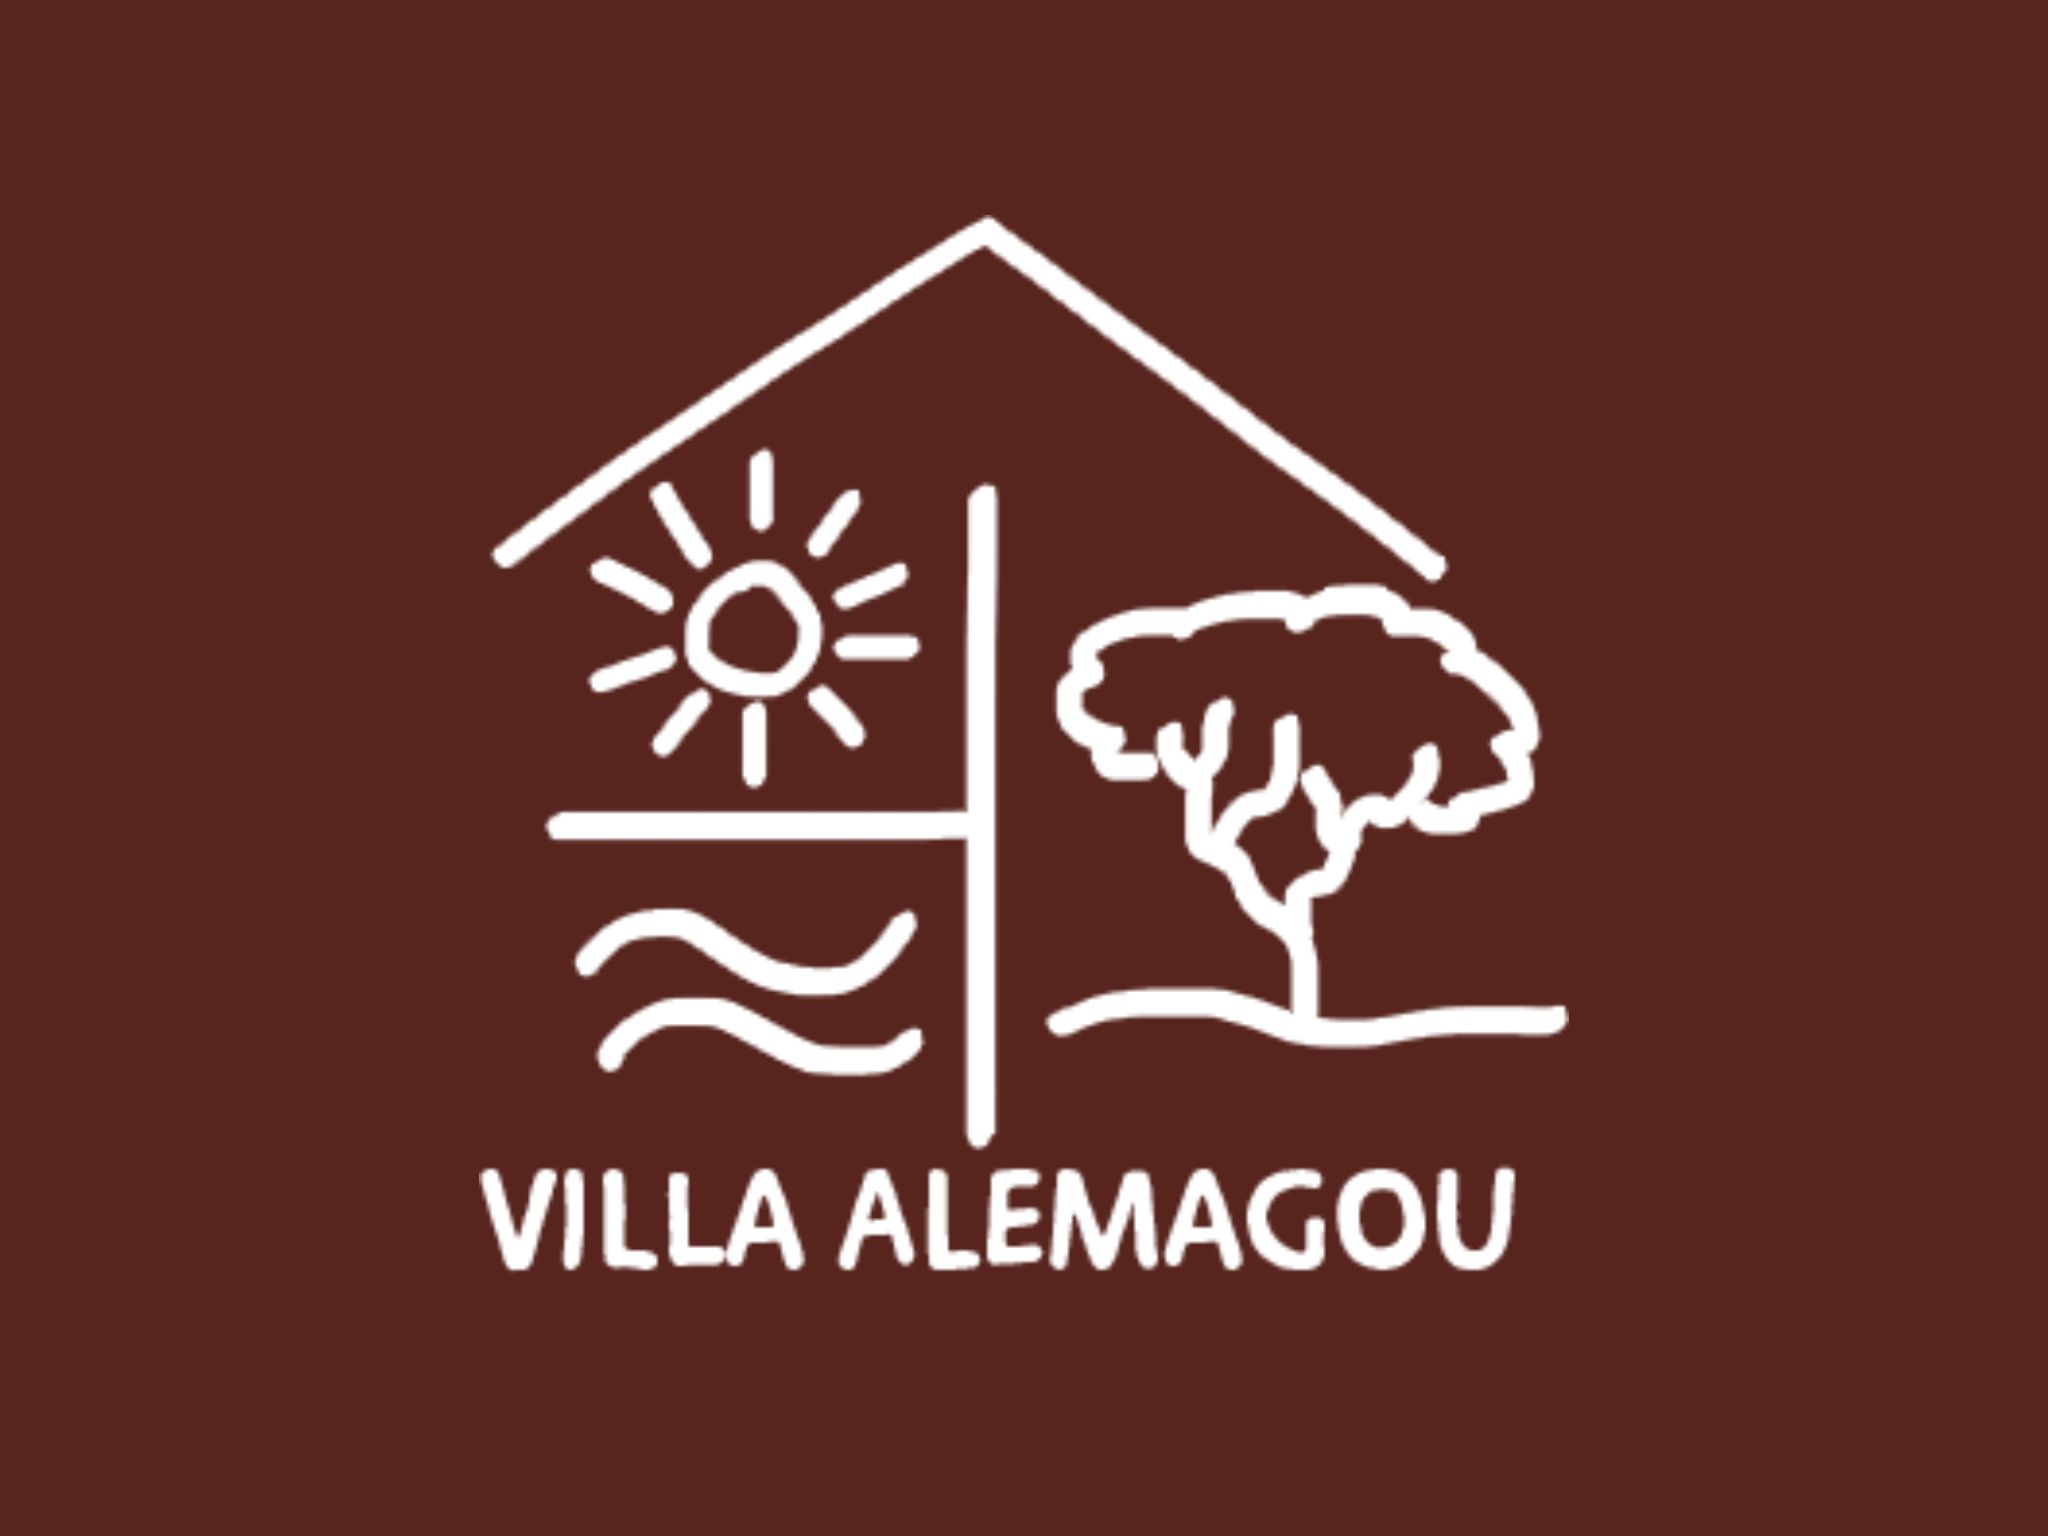  Logo Villa Alemagou 2